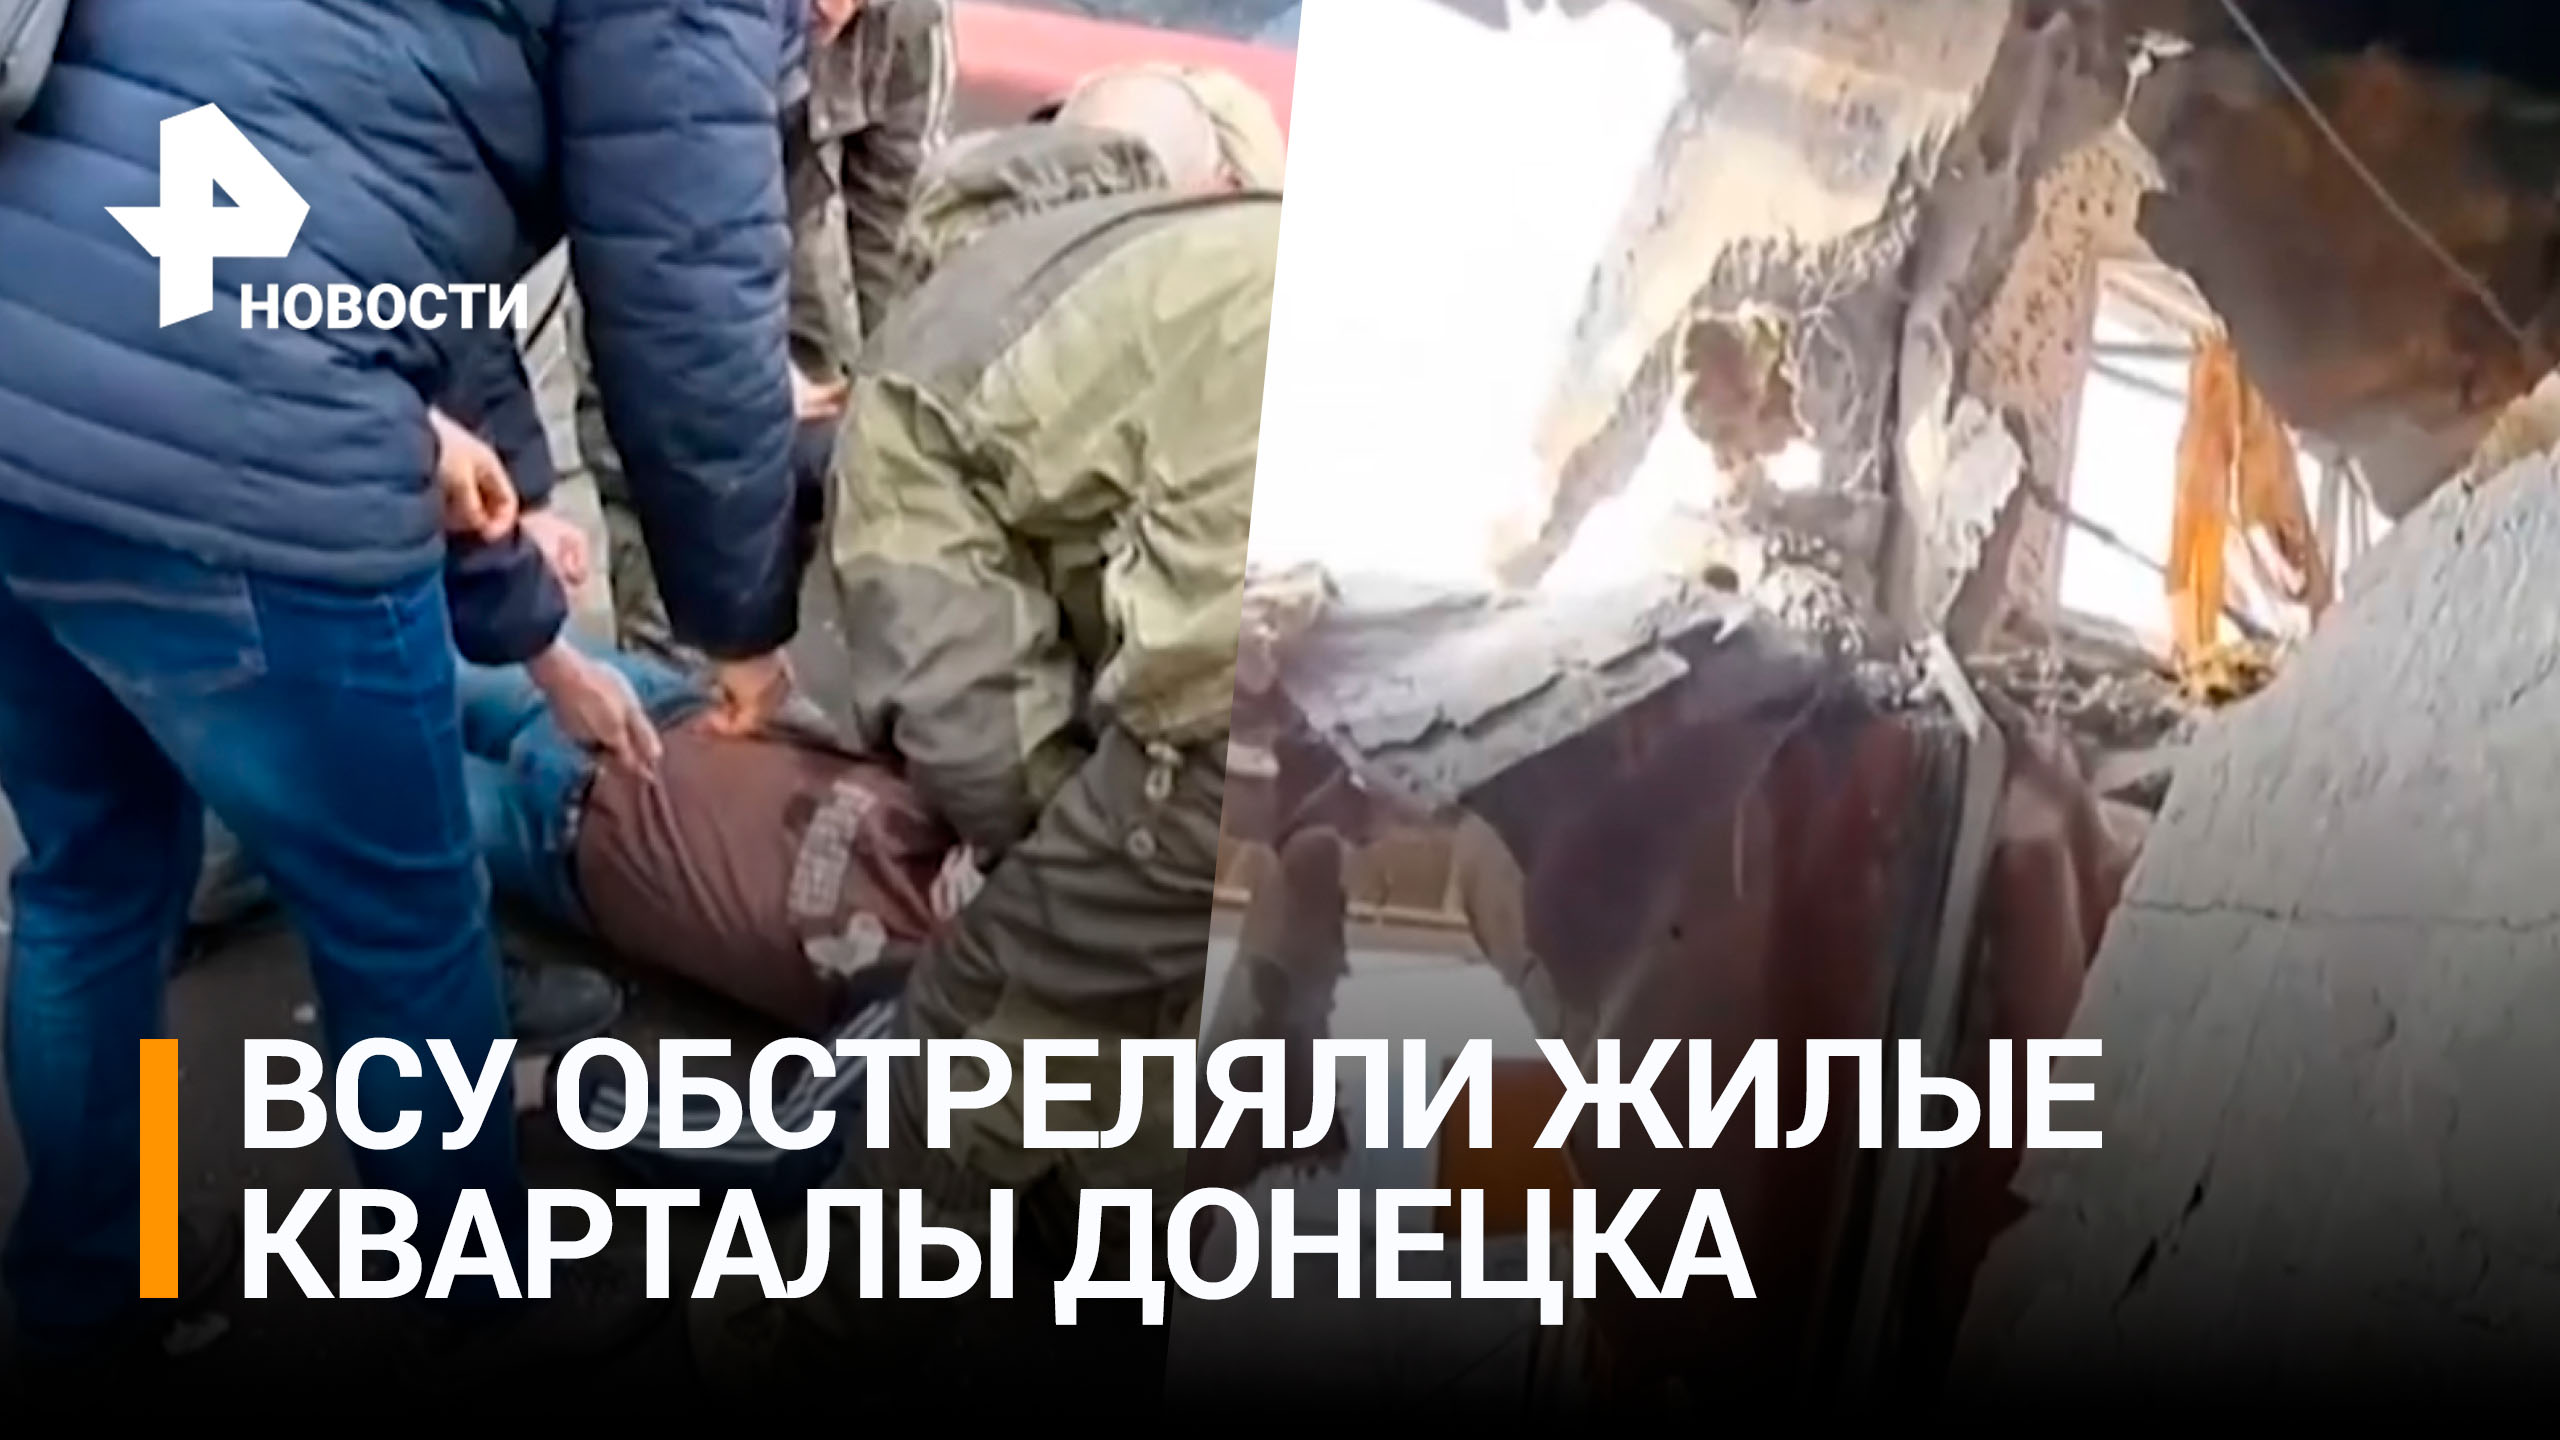 Украинские боевики обстреляли жилые кварталы Донецка / РЕН Новости